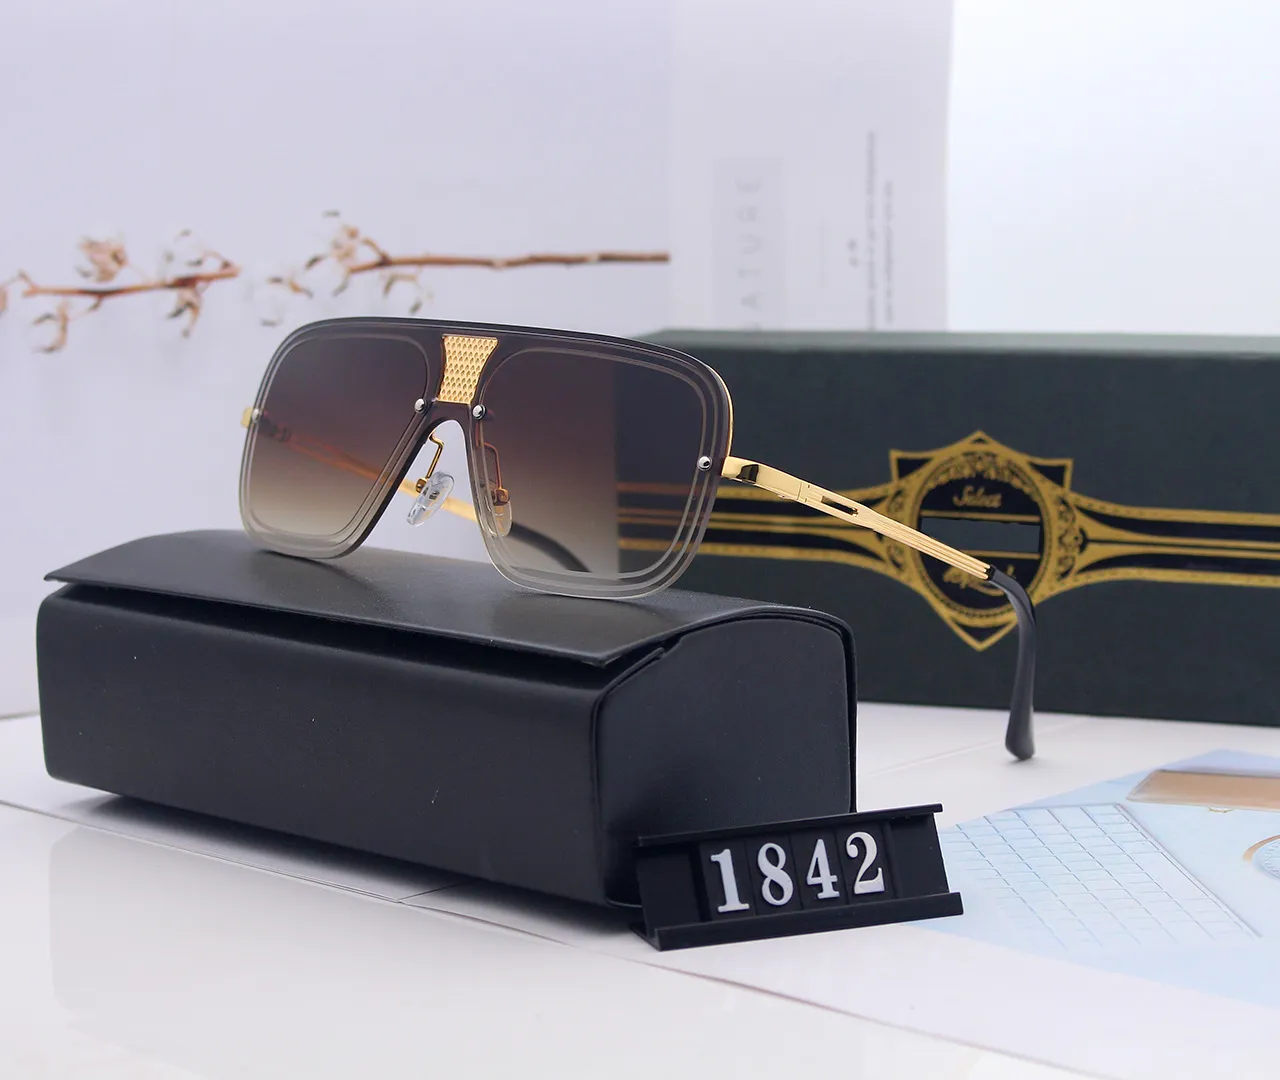 1842 Gafas de Sol Moda Menwomen солнцезащитные очки солнцезащитные очки UV400 ProtectionTop Calidad с коробкой Case250T